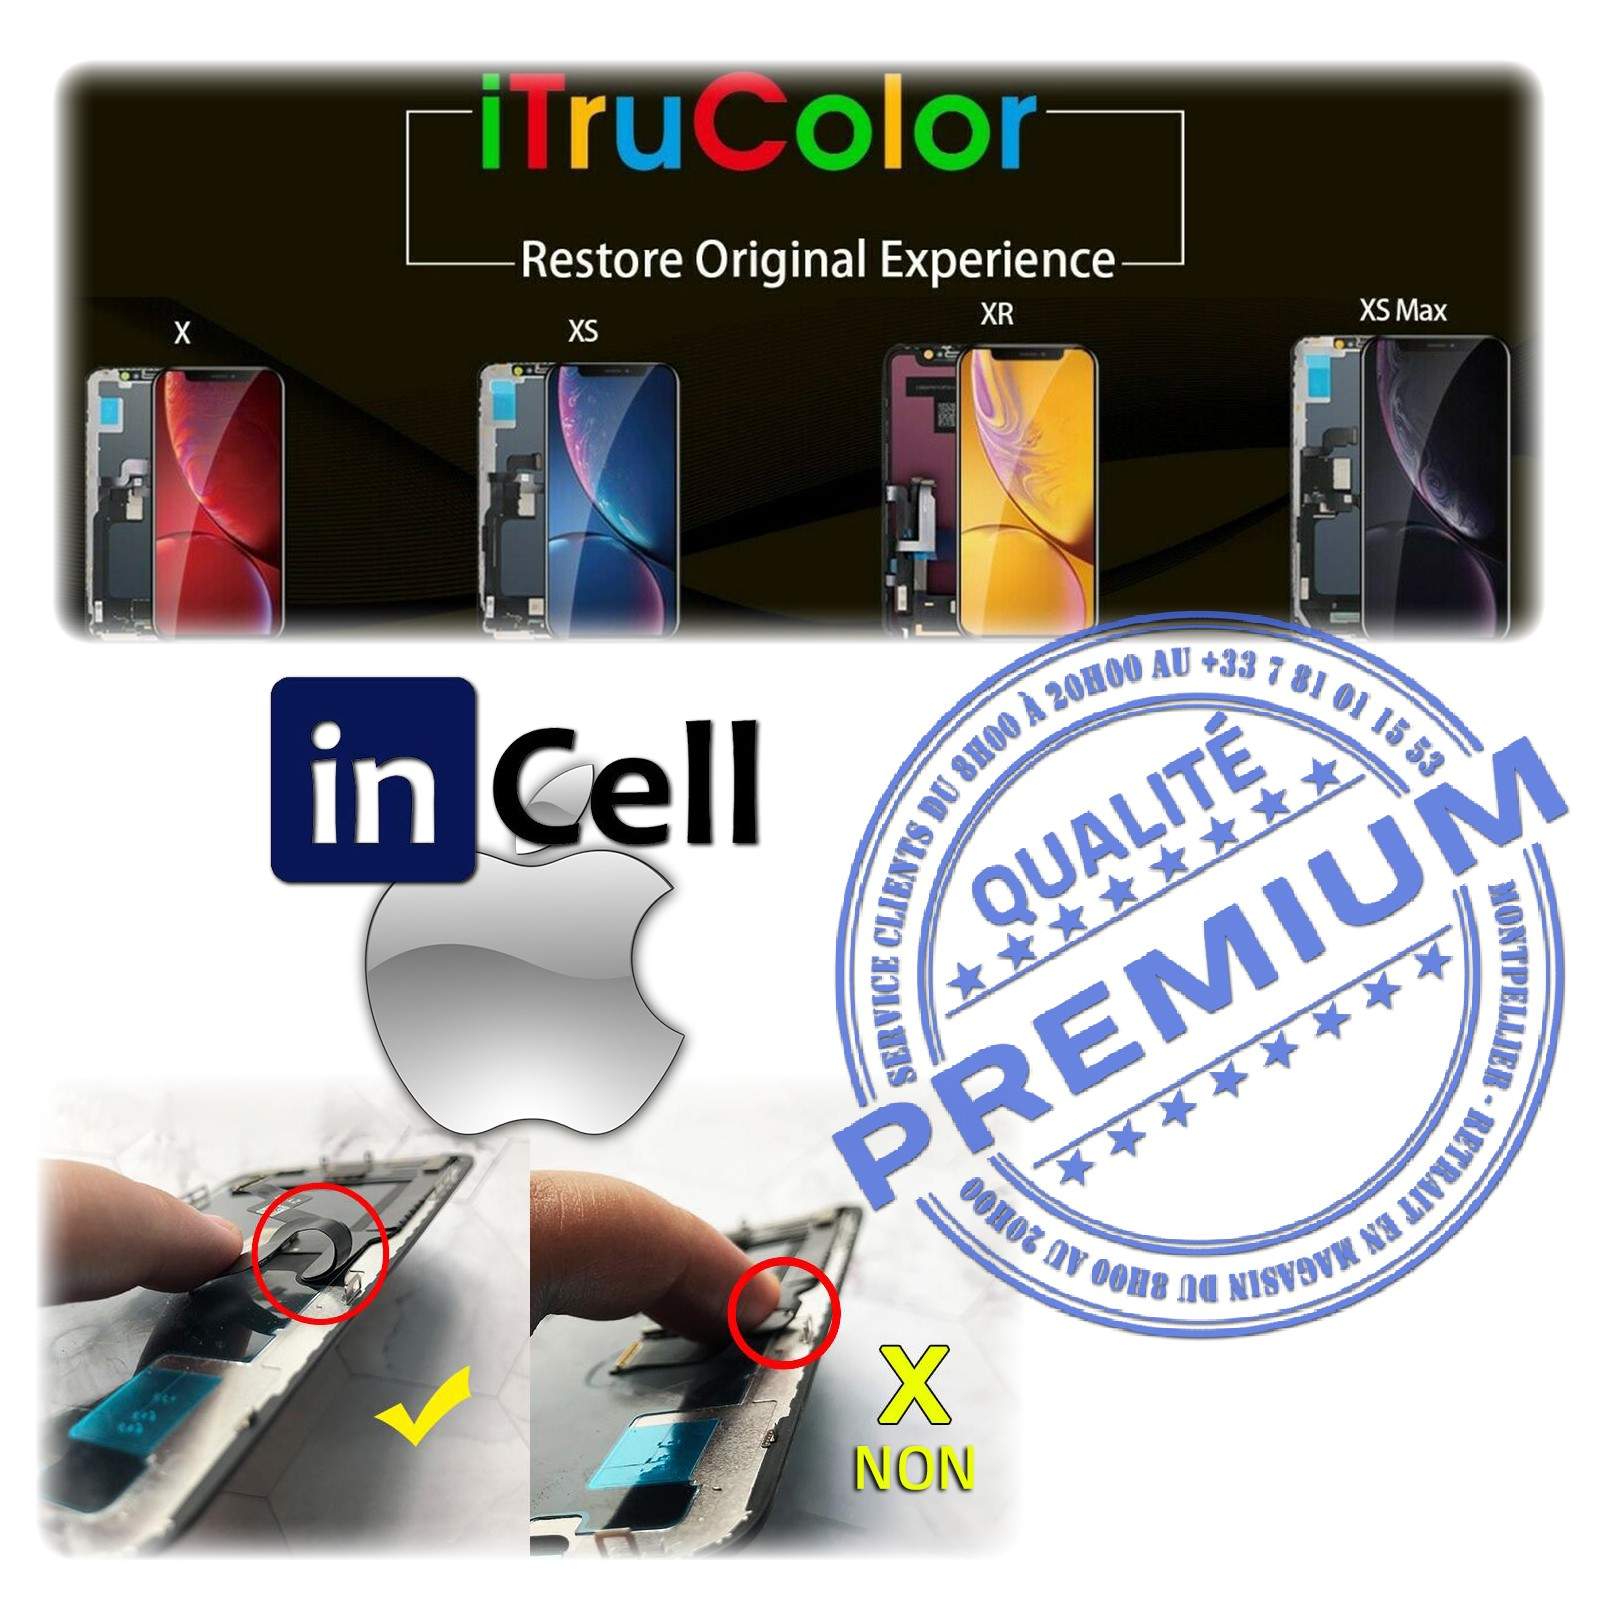 LCD iPhone XS A2097 Écran inCELL Apple PREMIUM Super Retina 5,8 pouces Vitre SmartPhone Affichage True Tone Cristaux Liquides